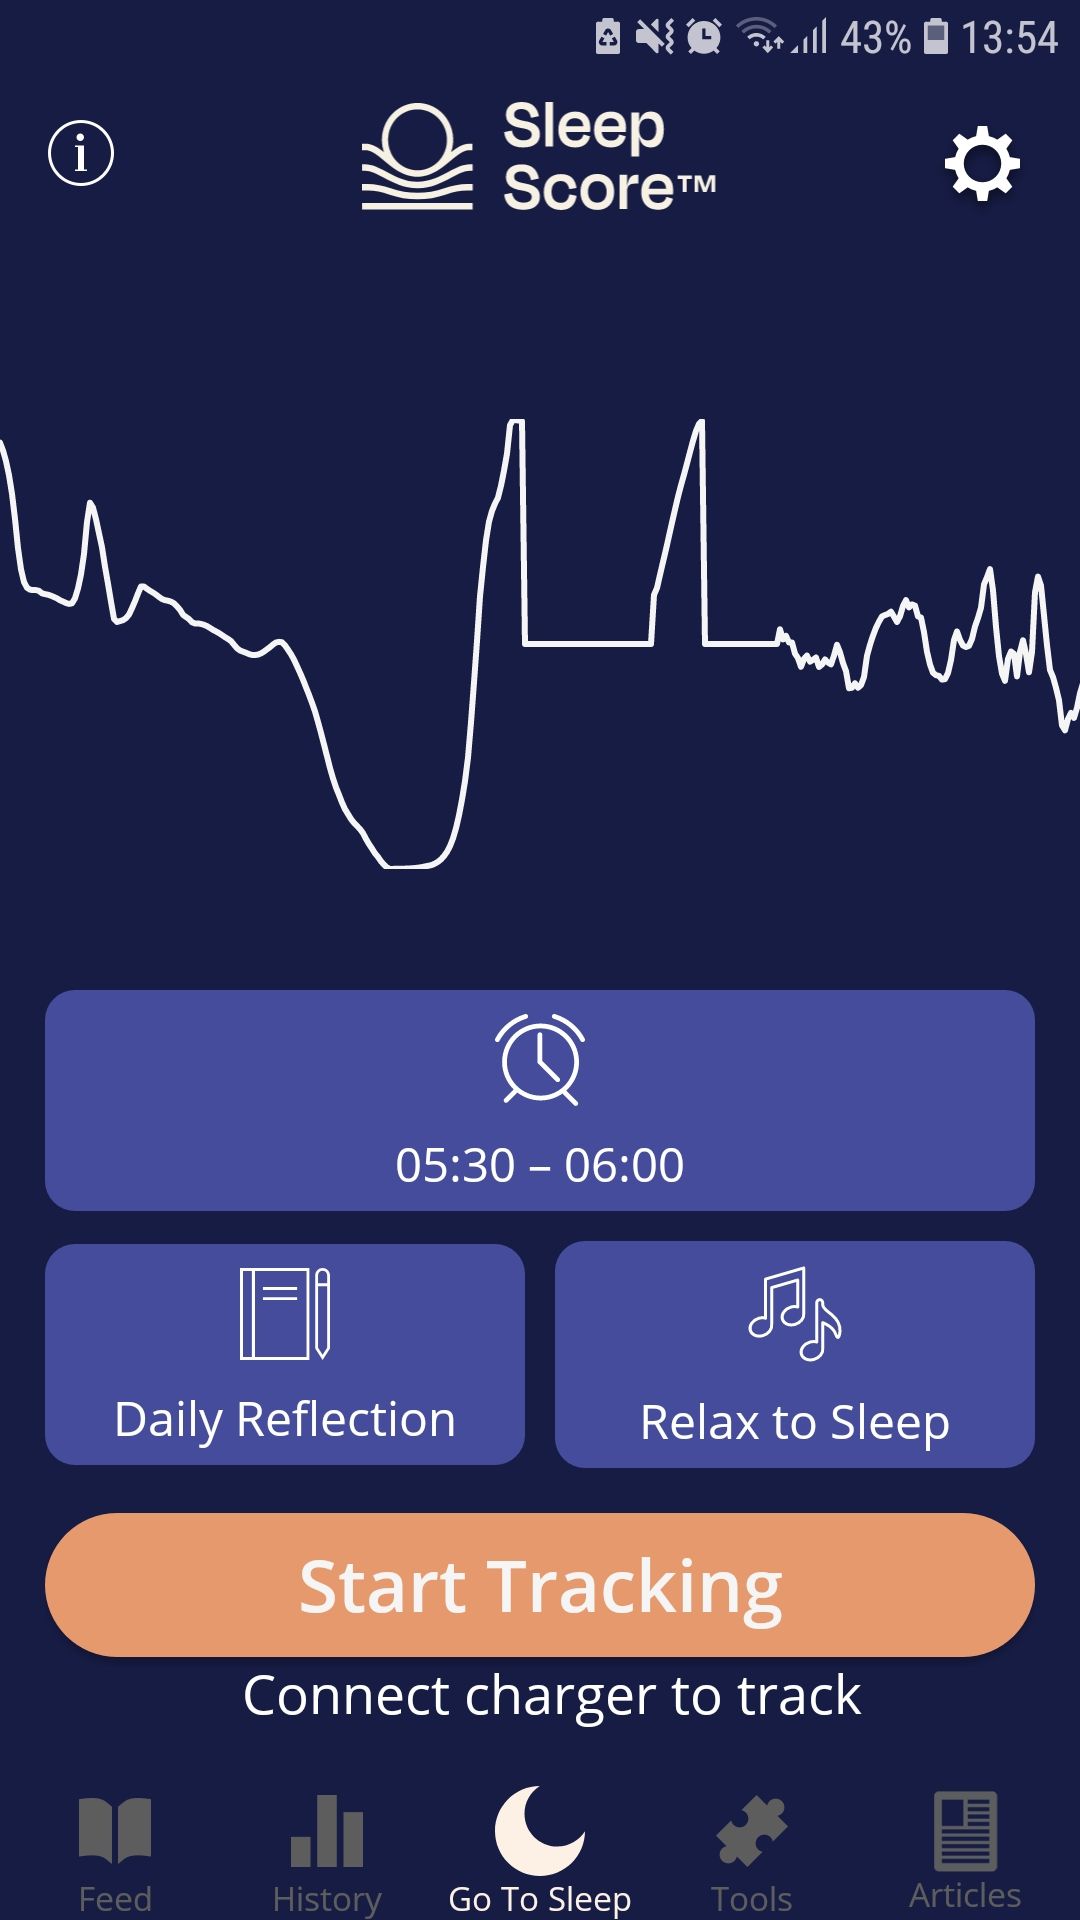 SleepScore sleep tracking mobile app